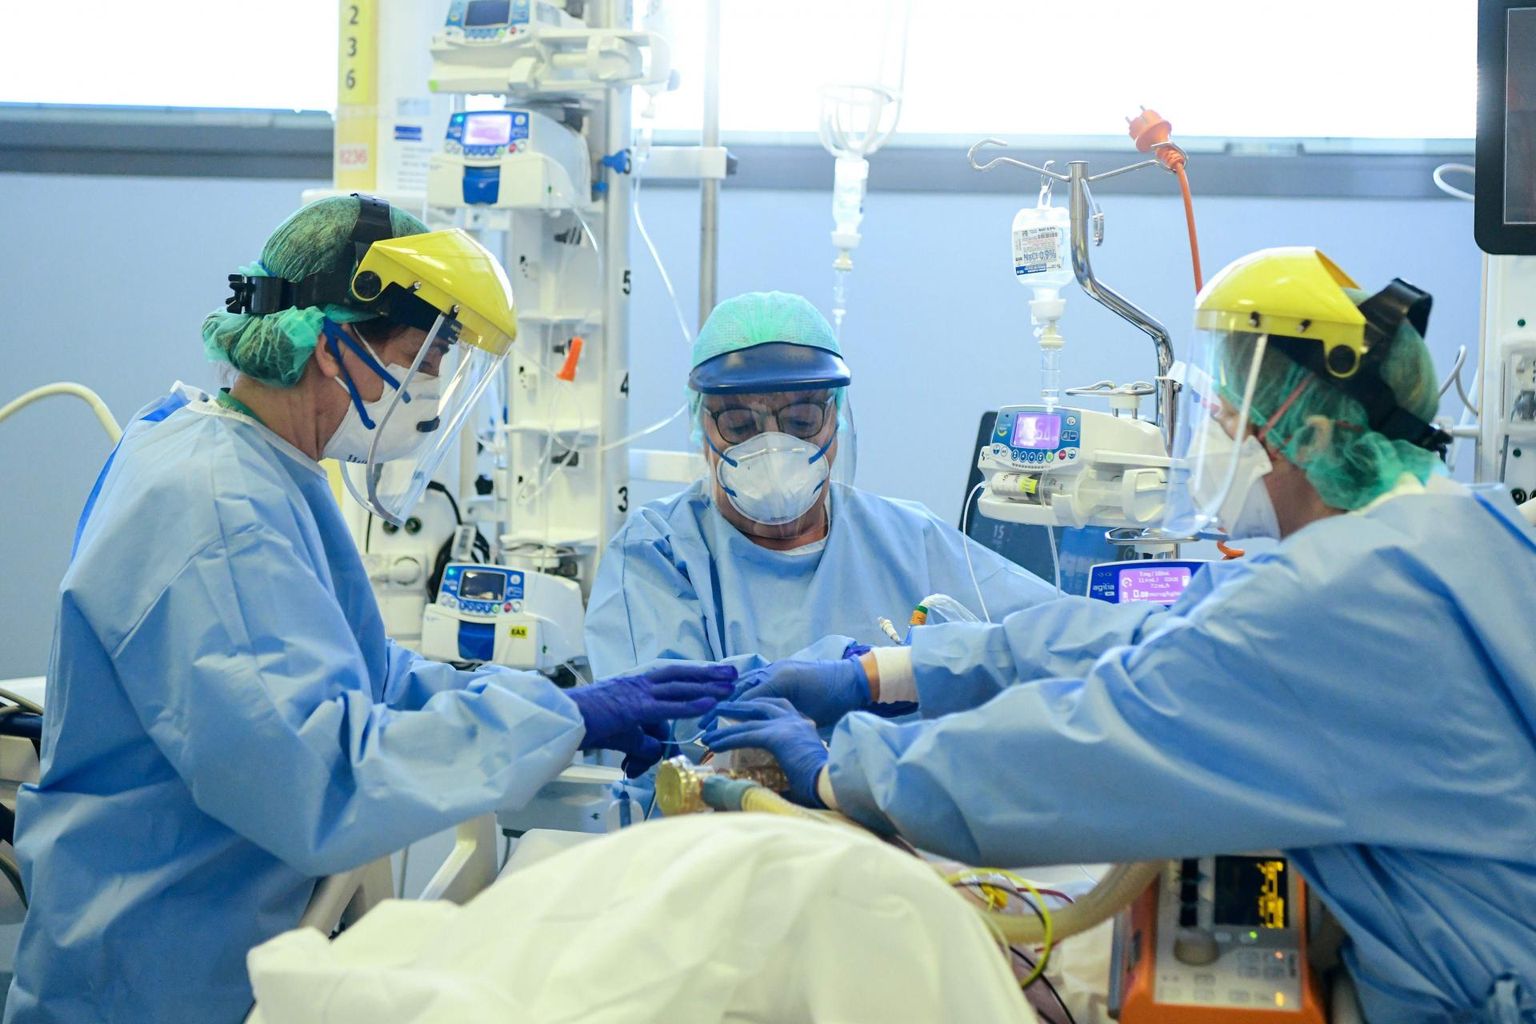 Lombardia maakonnas hospitaliseeriti 60 protsenti koroonaviirusega nakatunutest, mis tõi kaasa haiglate ülekoormamise ja viiruse ulatusliku leviku meditsiinitöötajatele ning kaaspatsientidele. 